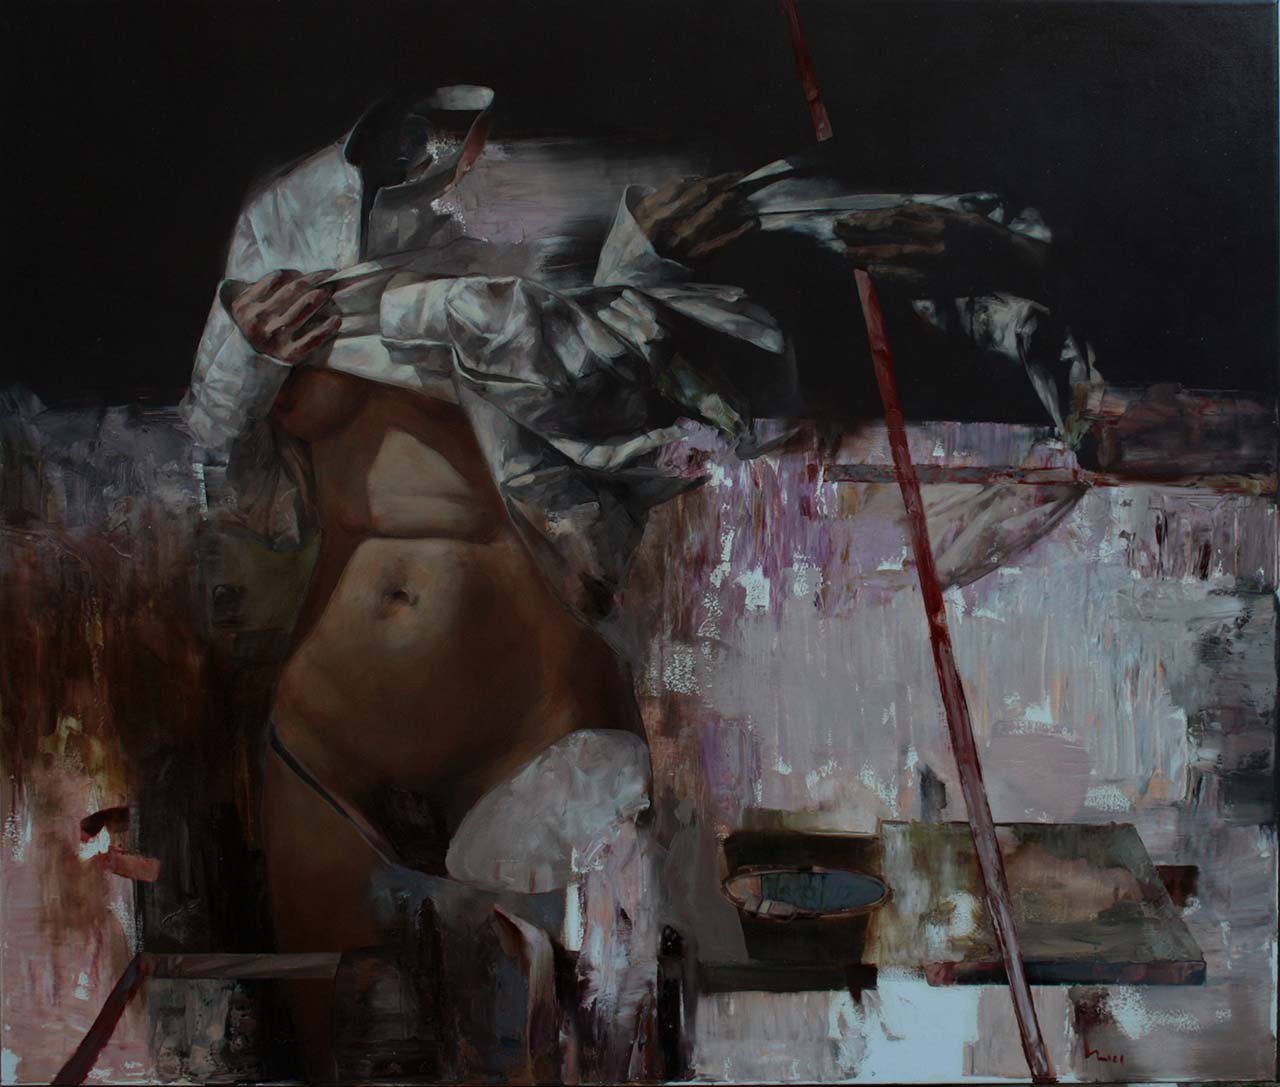 Mózes Incze, The Other Body (2018), oil on canvas, 110 x 115 cm